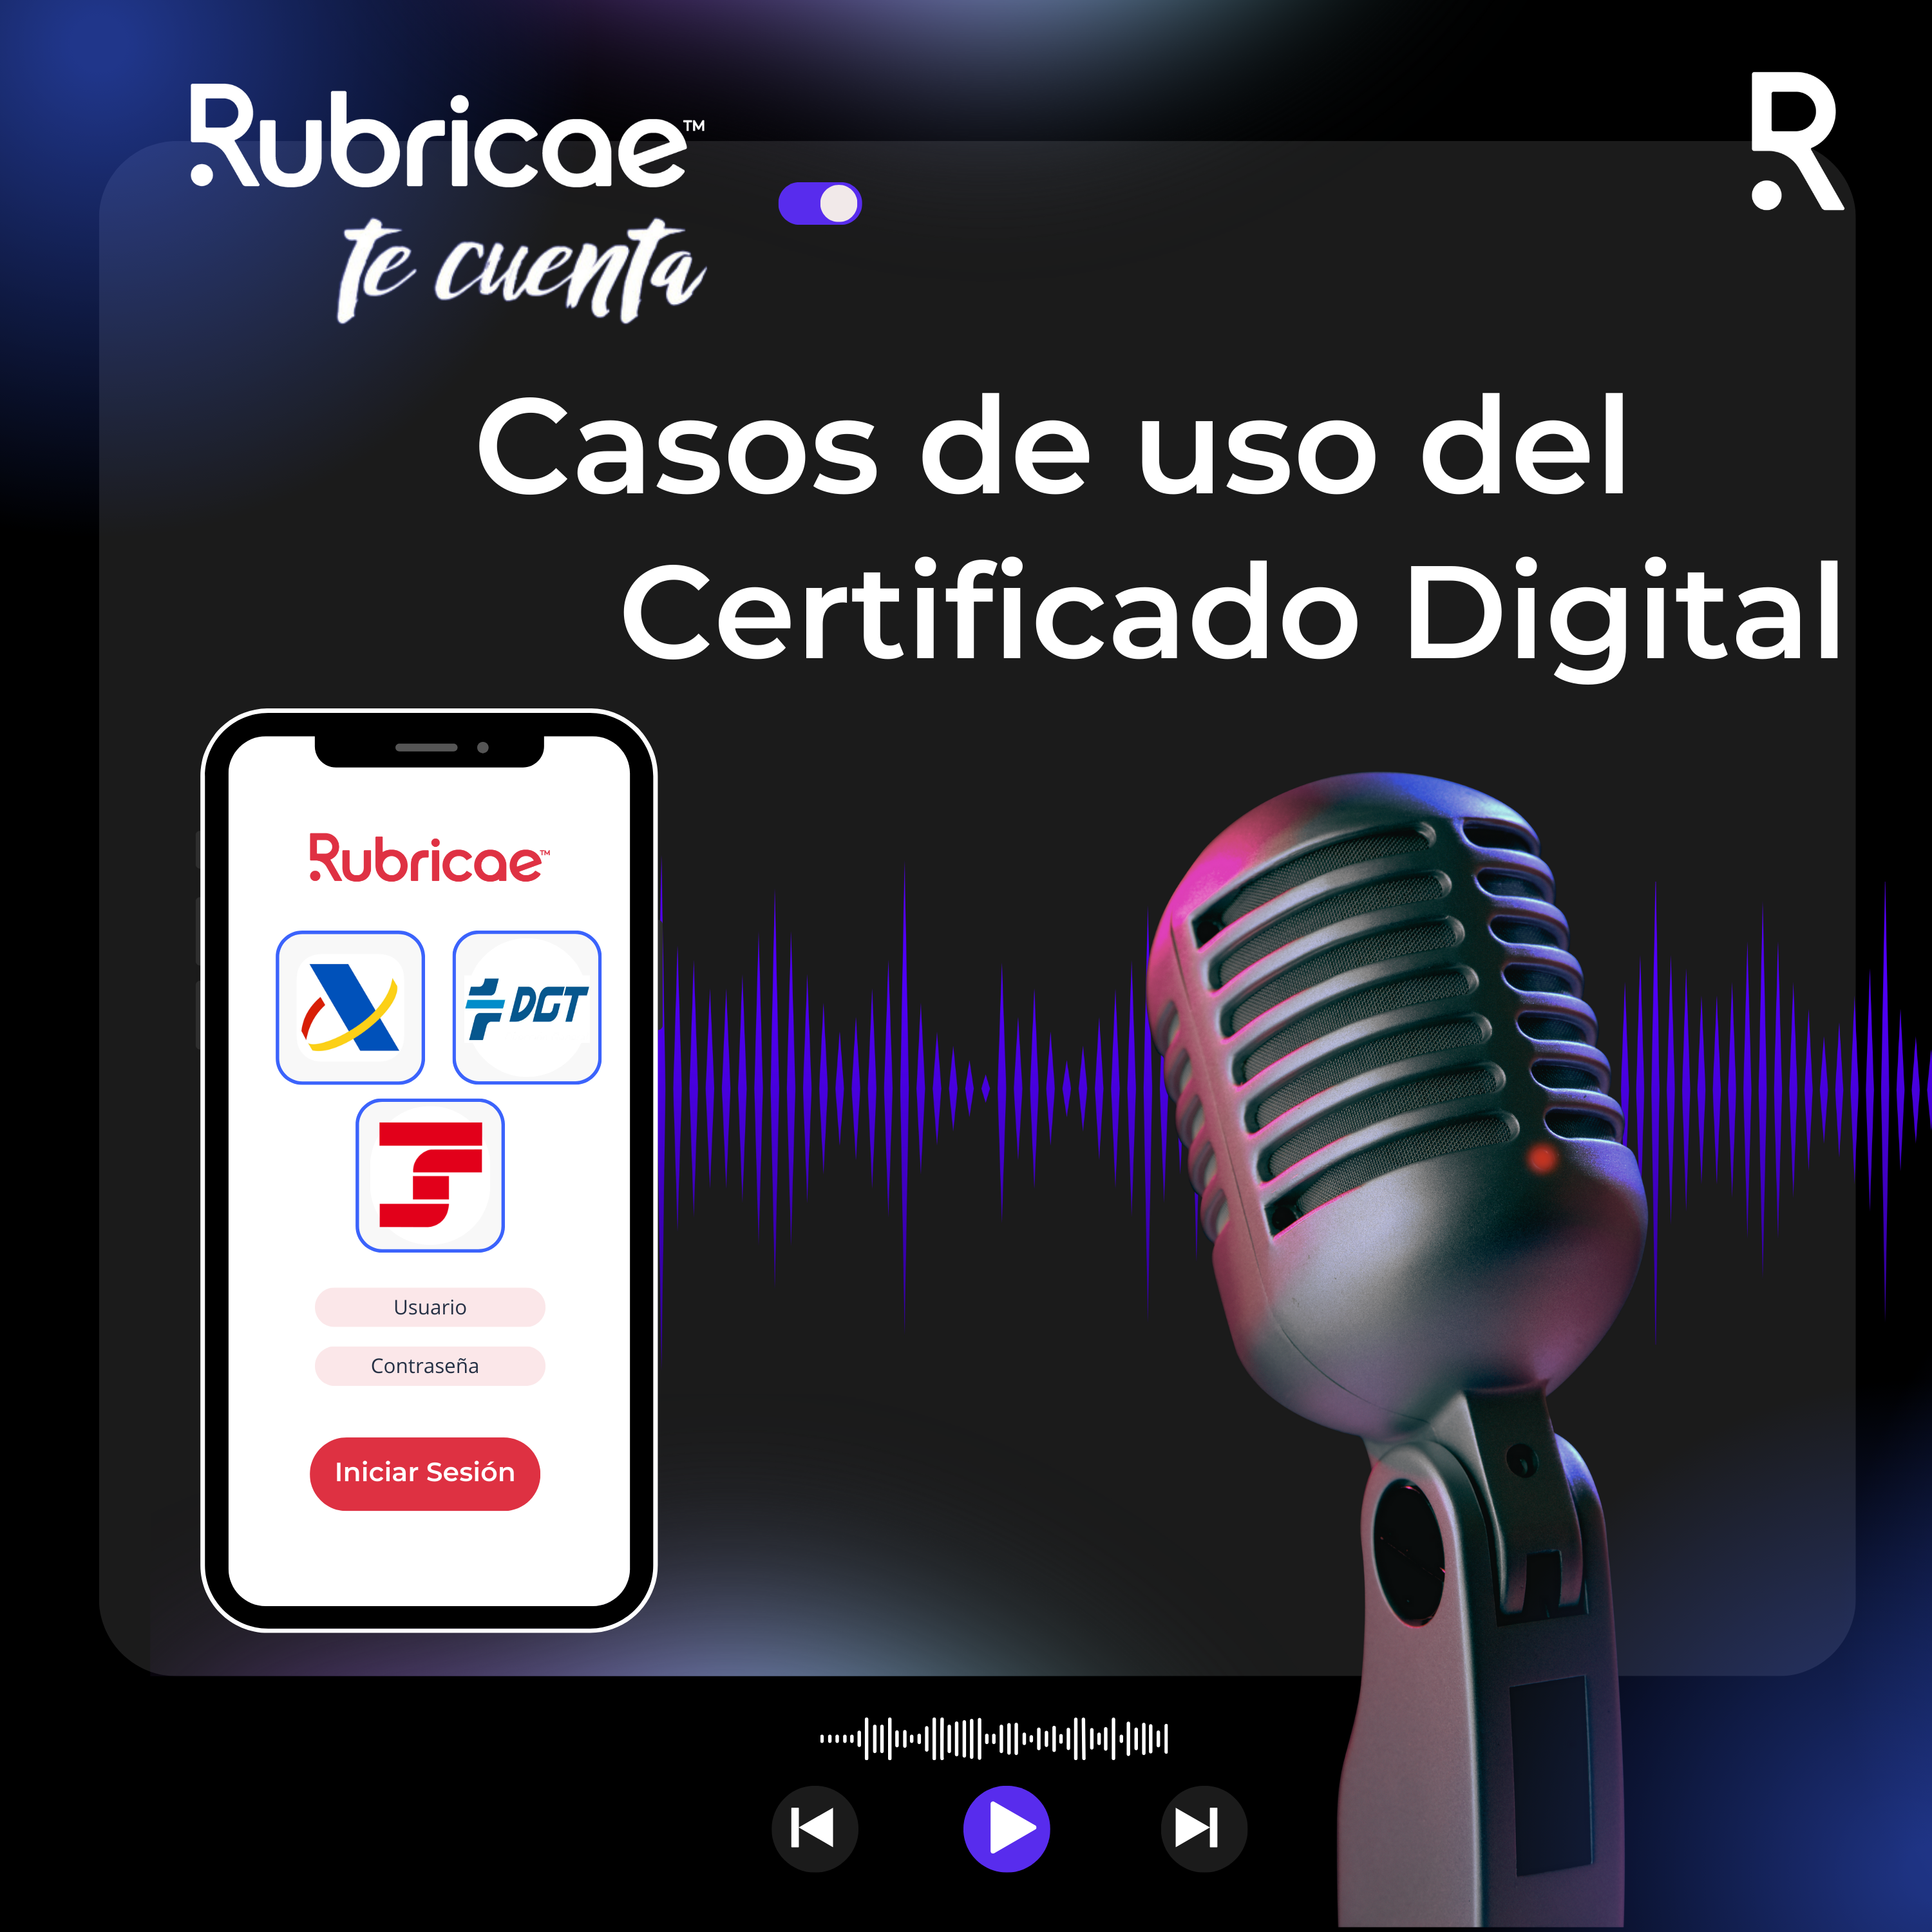 Rubricae te cuenta Podcast Casos de uso del certificado digital